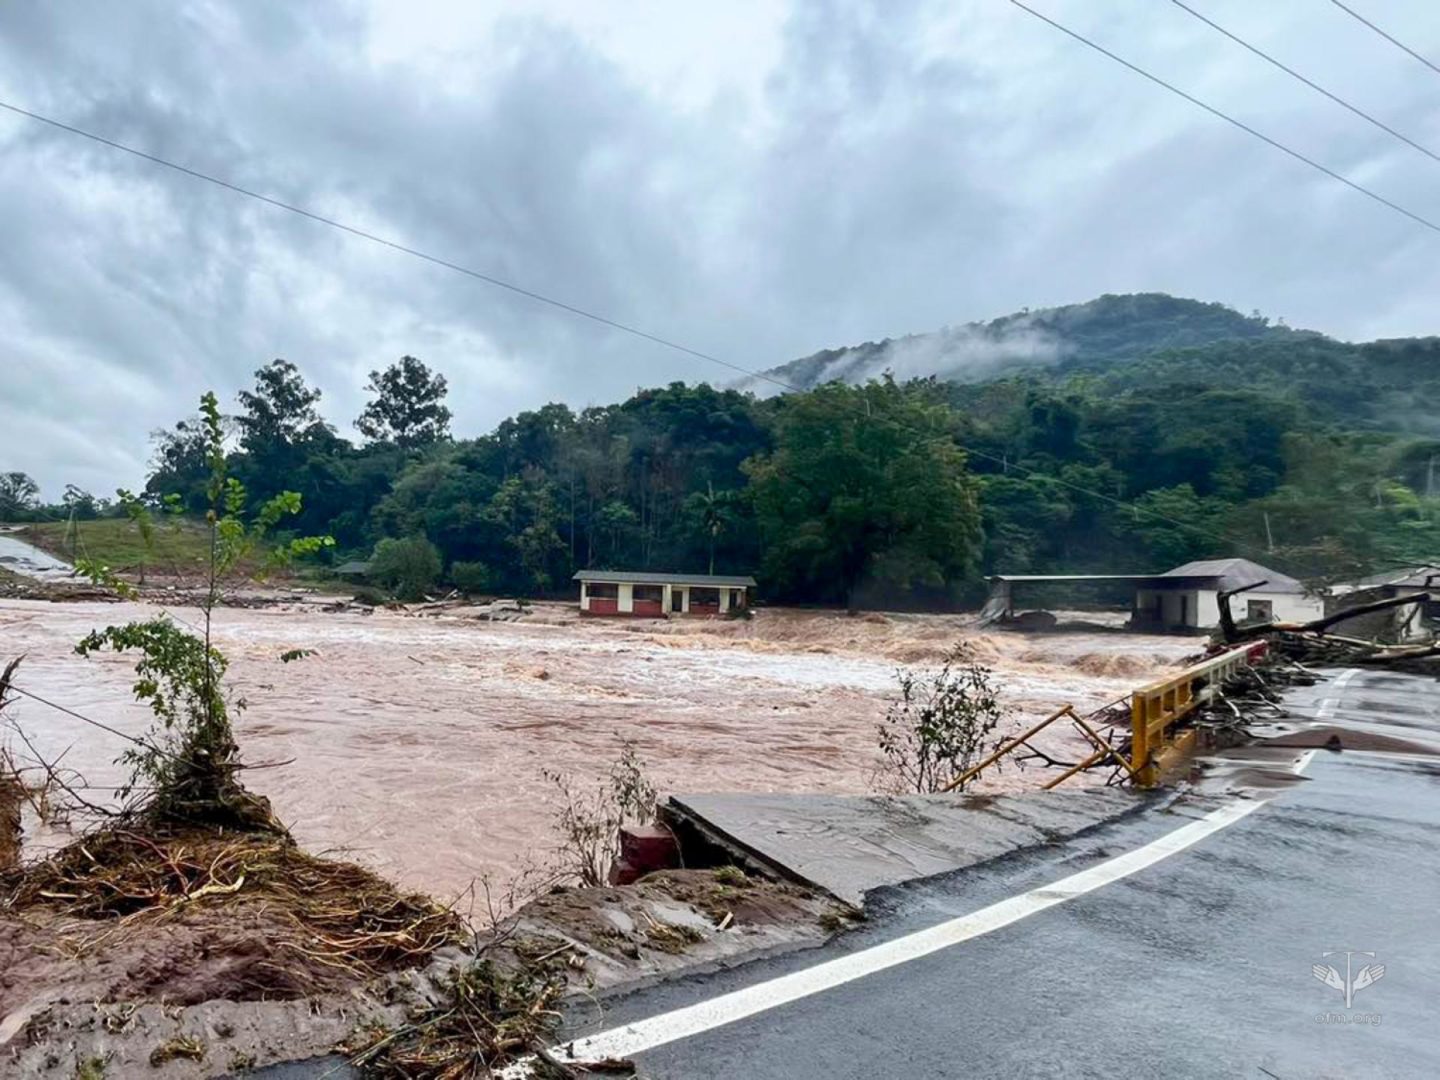 [Emergência no Brasil – Arrecadação de fundos para ajudar as populações afetadas pelas inundações]